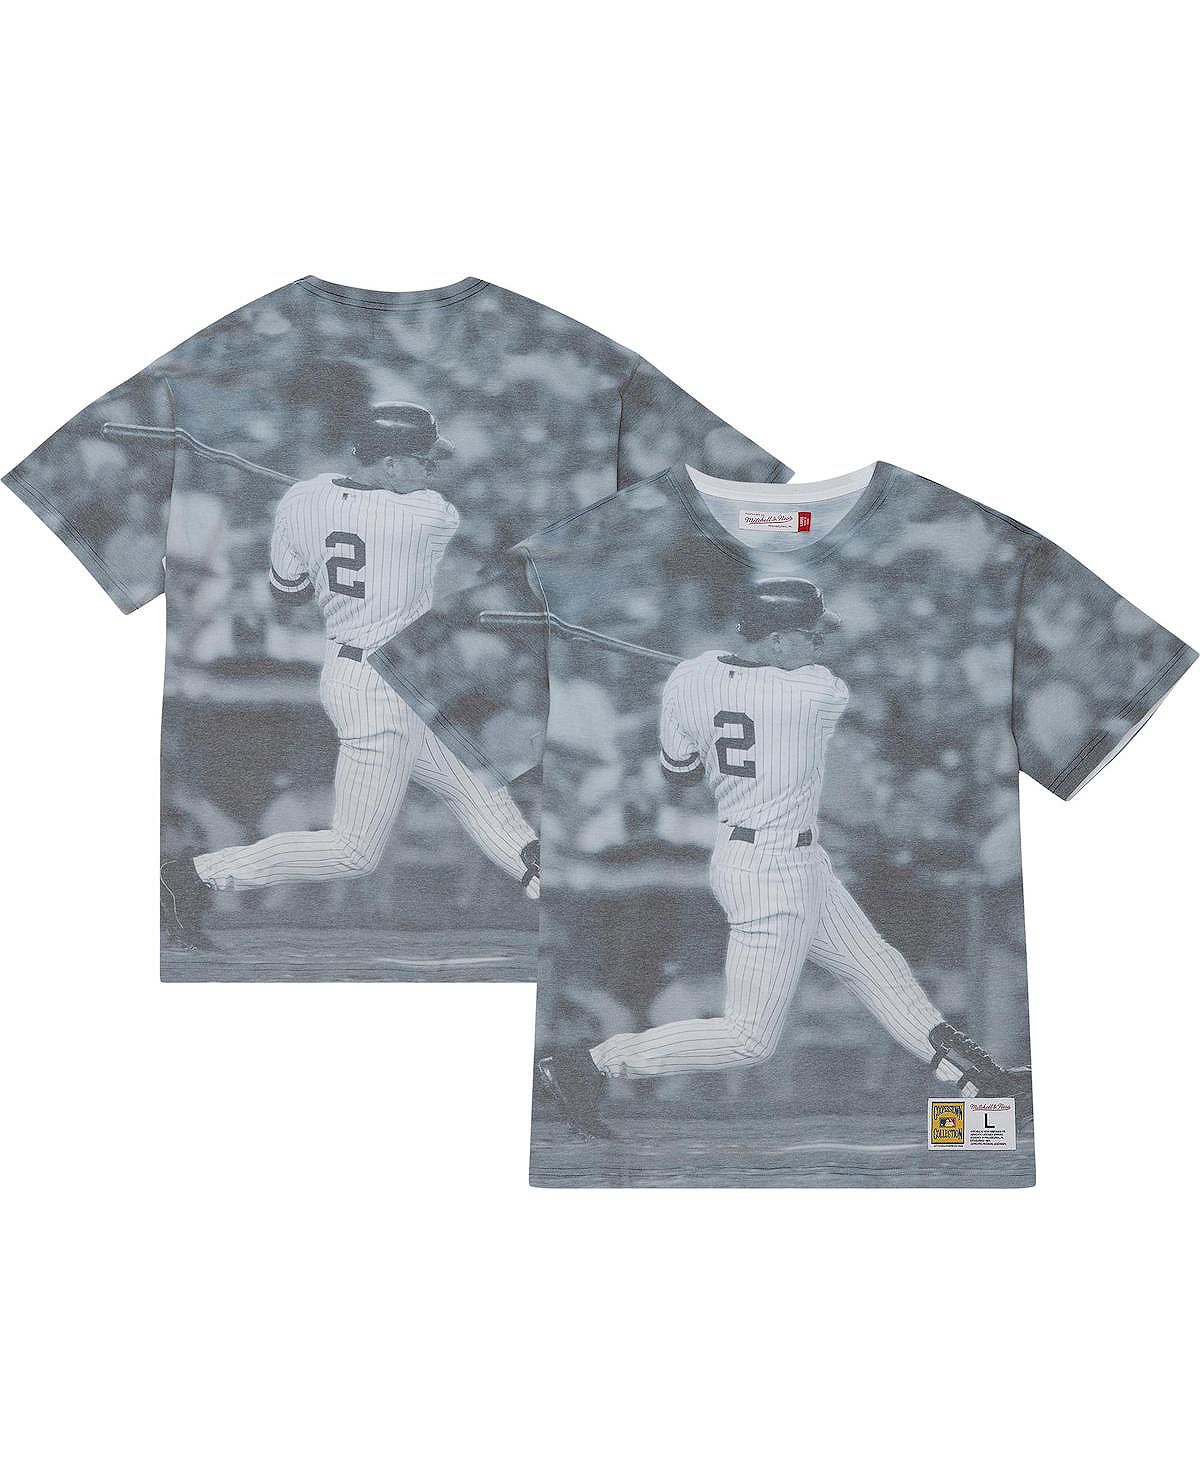 Мужская футболка Derek Jeter New York Yankees Cooperstown Collection с сублимированным рисунком игрока Mitchell & Ness джармен дерек современная природа